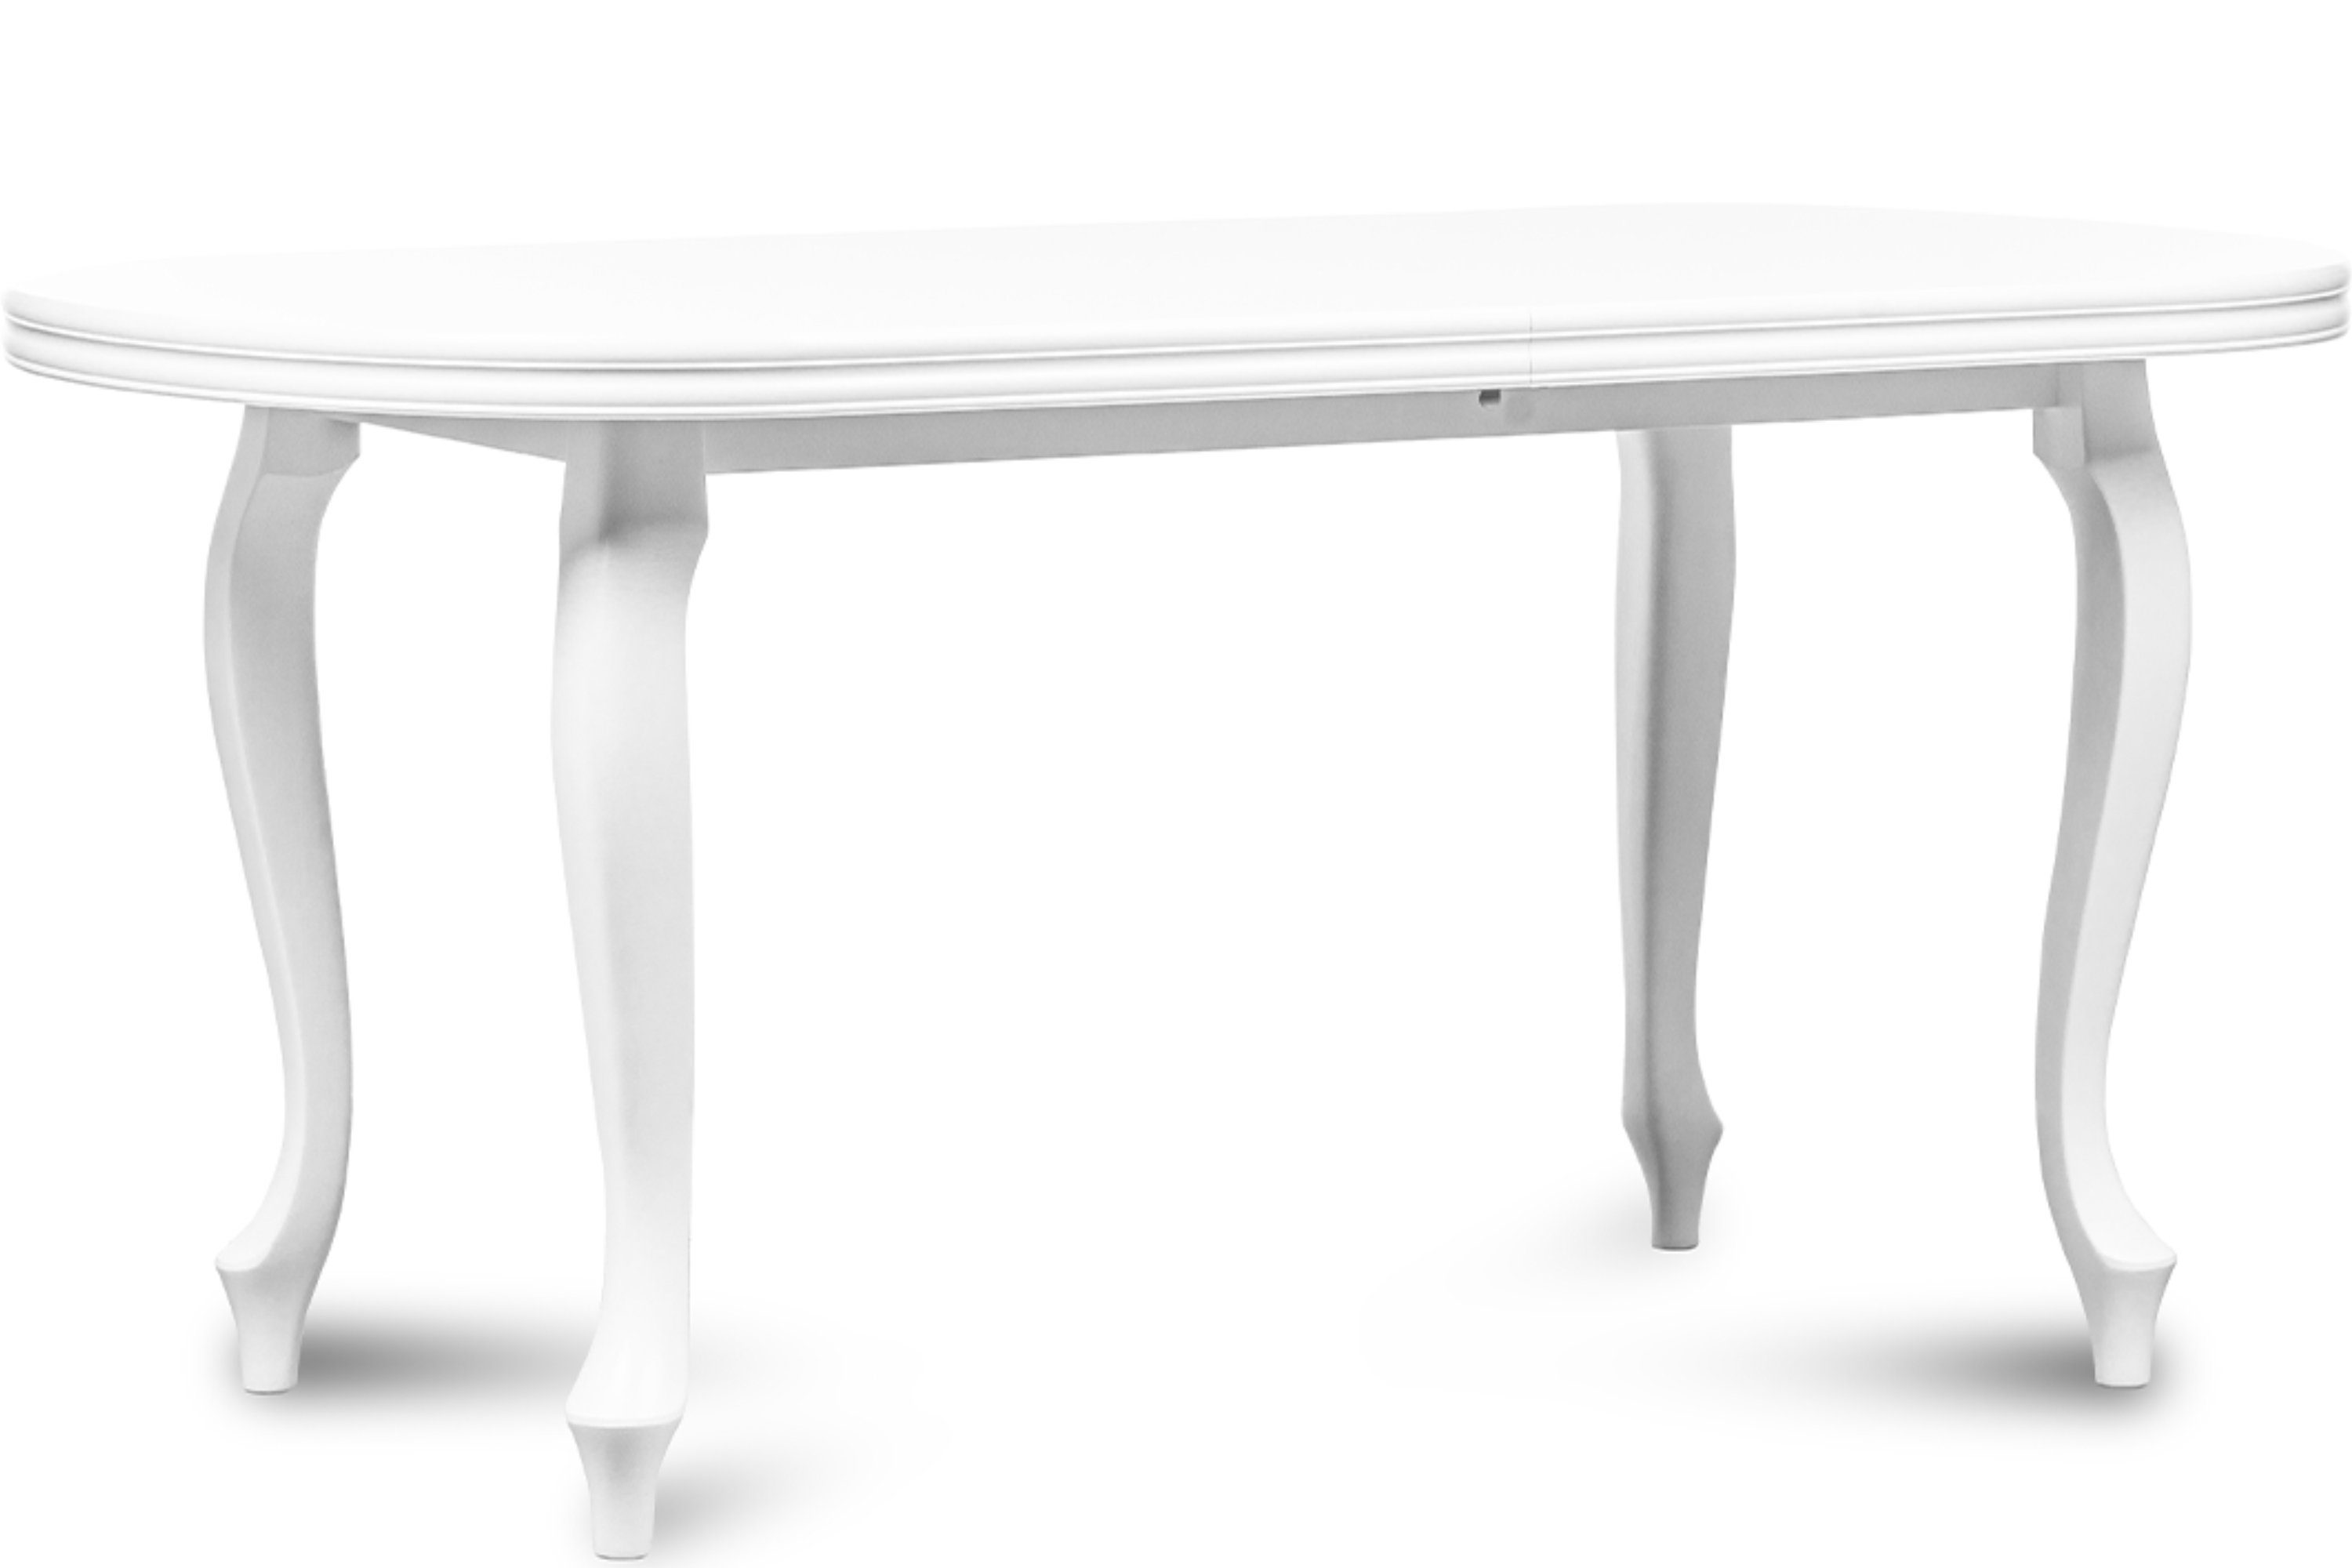 Konsimo Esstisch ALTIS Esszimmertisch Küchentisch 160x90cm, ausziehbar bis 200cm, oval weiß | weiß | weiß